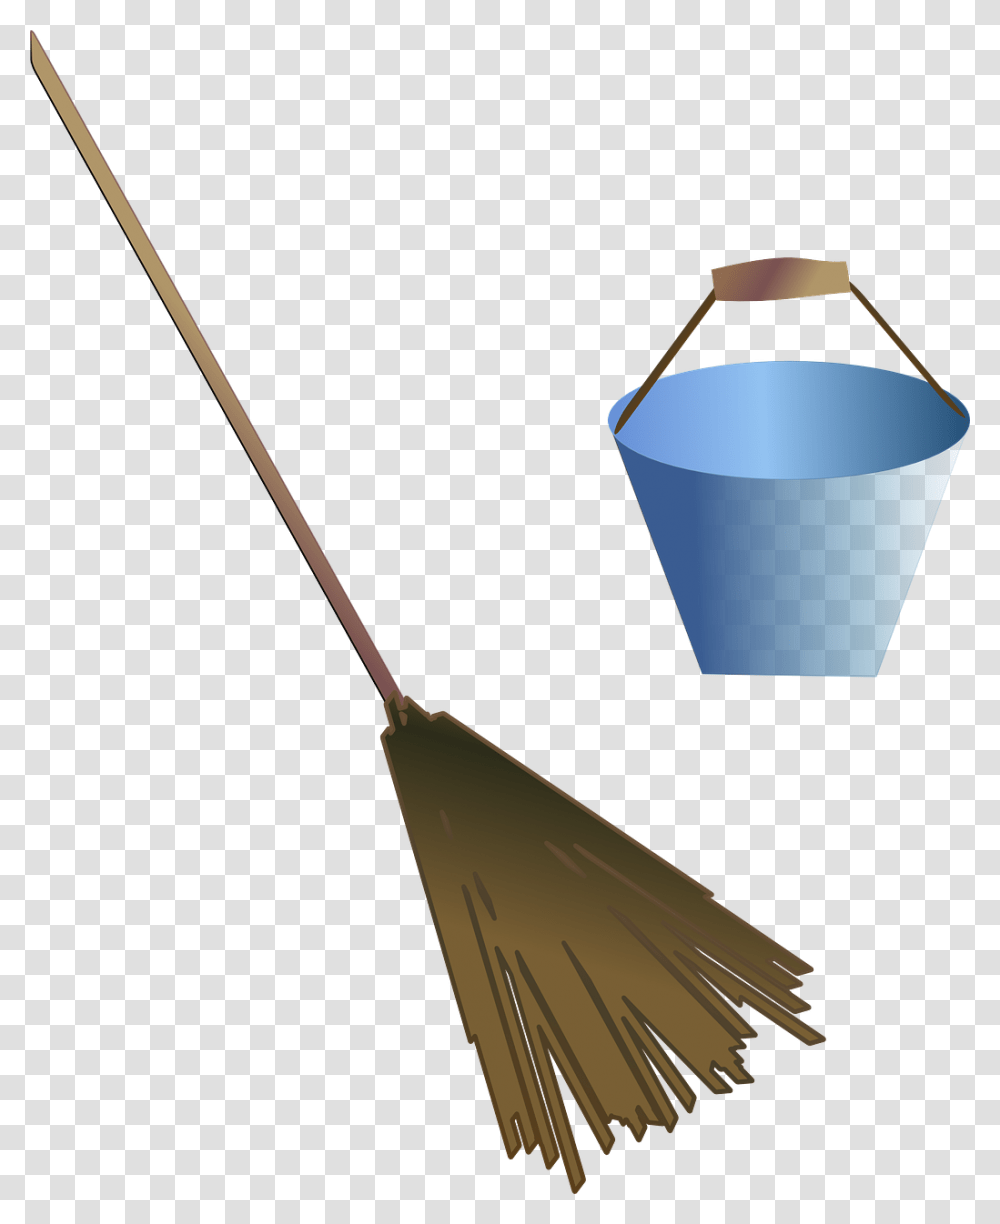 Broom Clip Art, Bucket, Lamp Transparent Png